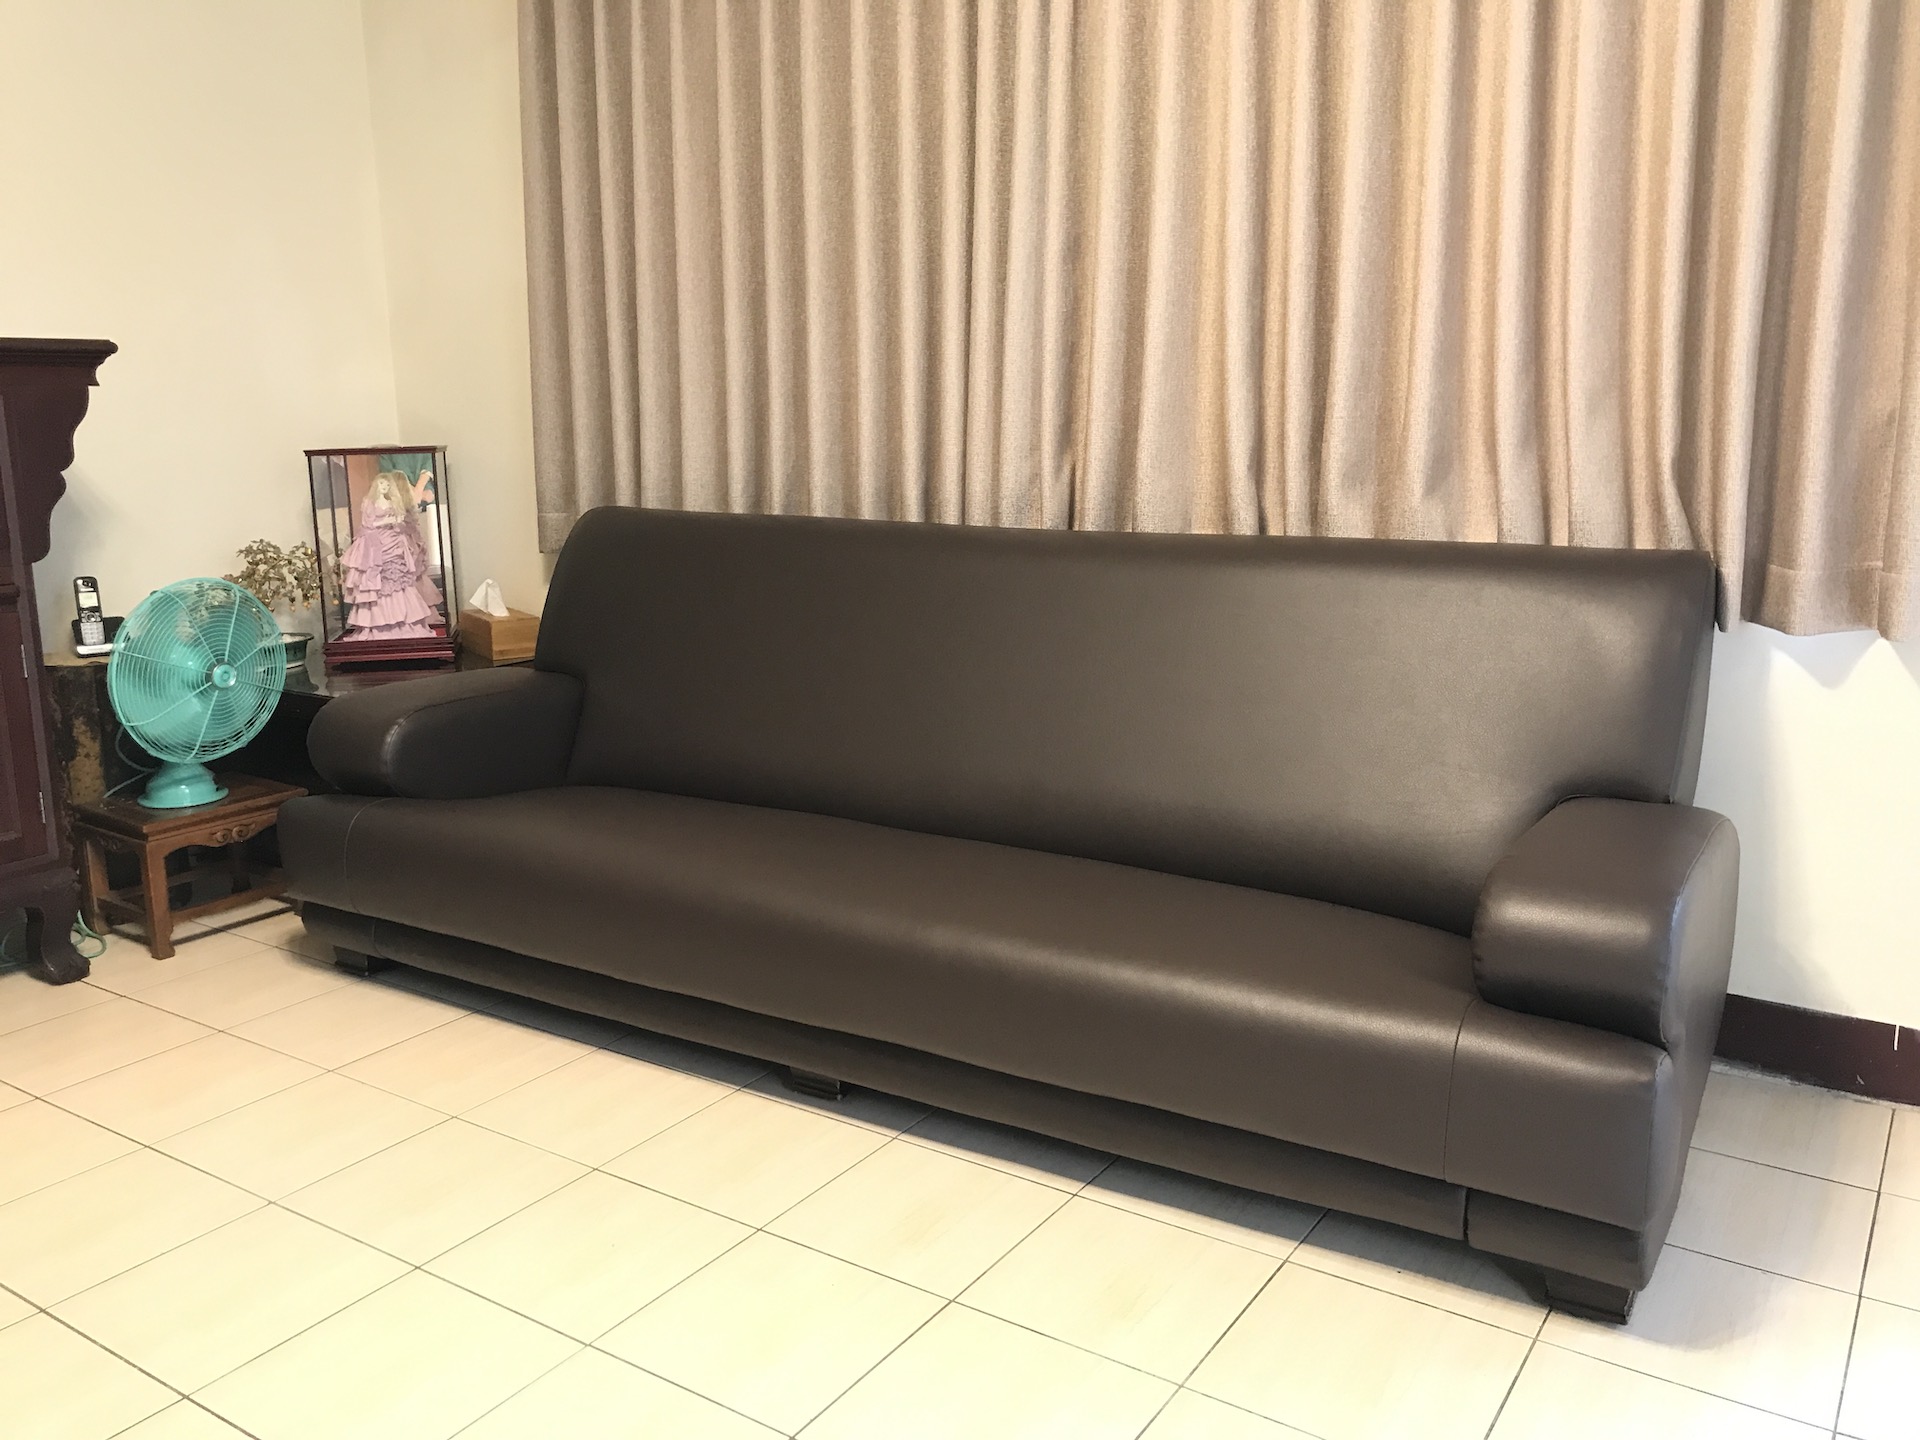 【客戶案例分享】260公分寬沙發整座更換合成皮